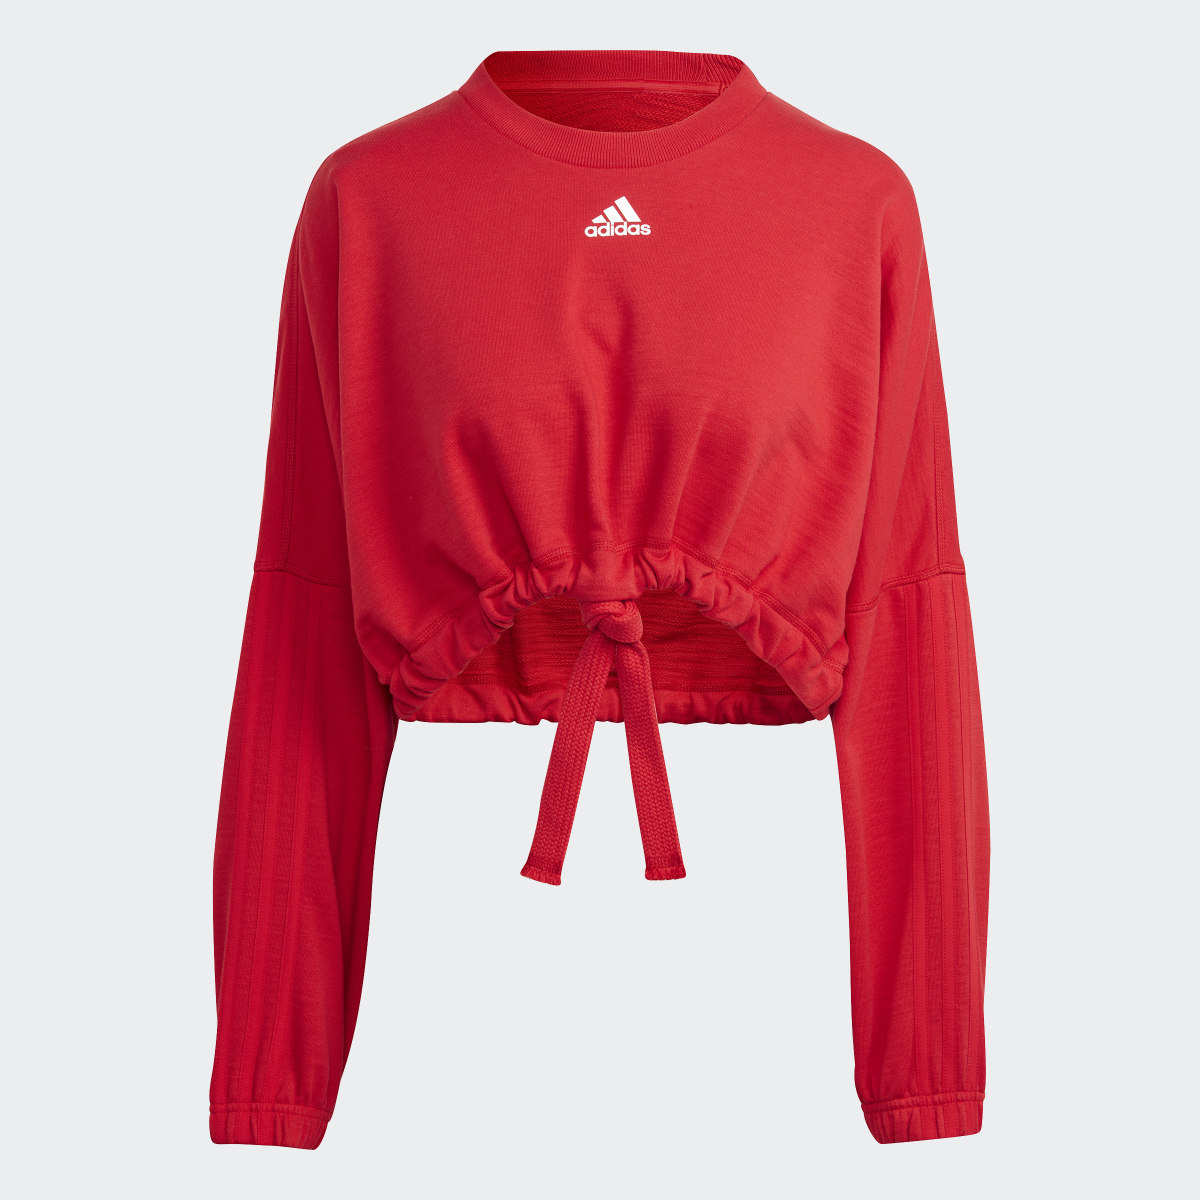 Adidas Dance Crop Versatile Sweatshirt. 5